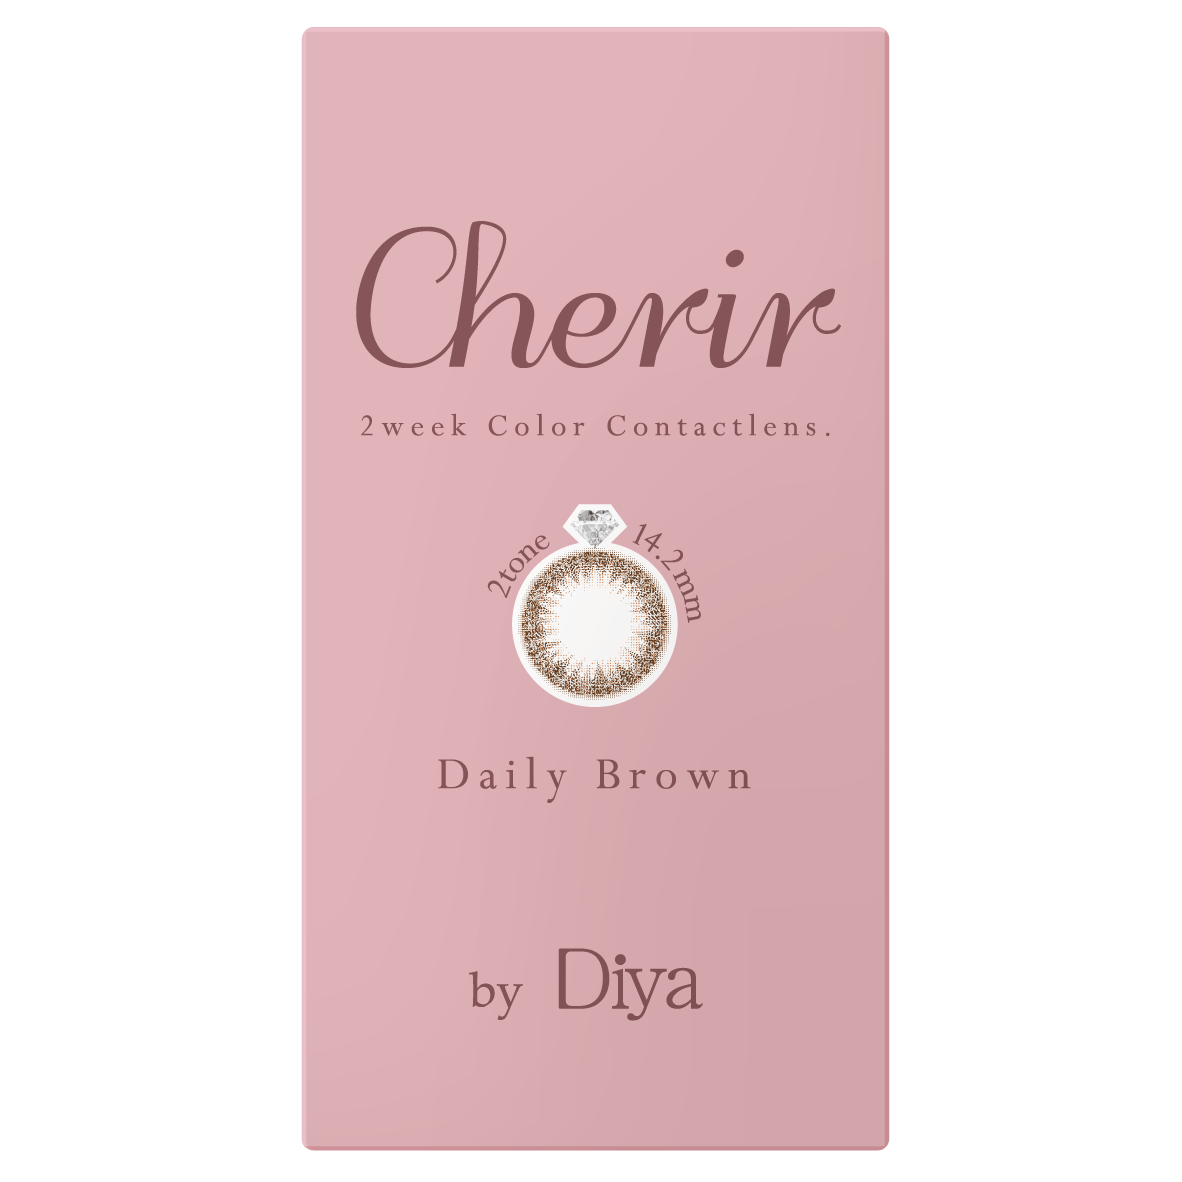 Cherir by Diya(6枚入) デイリーブラウン